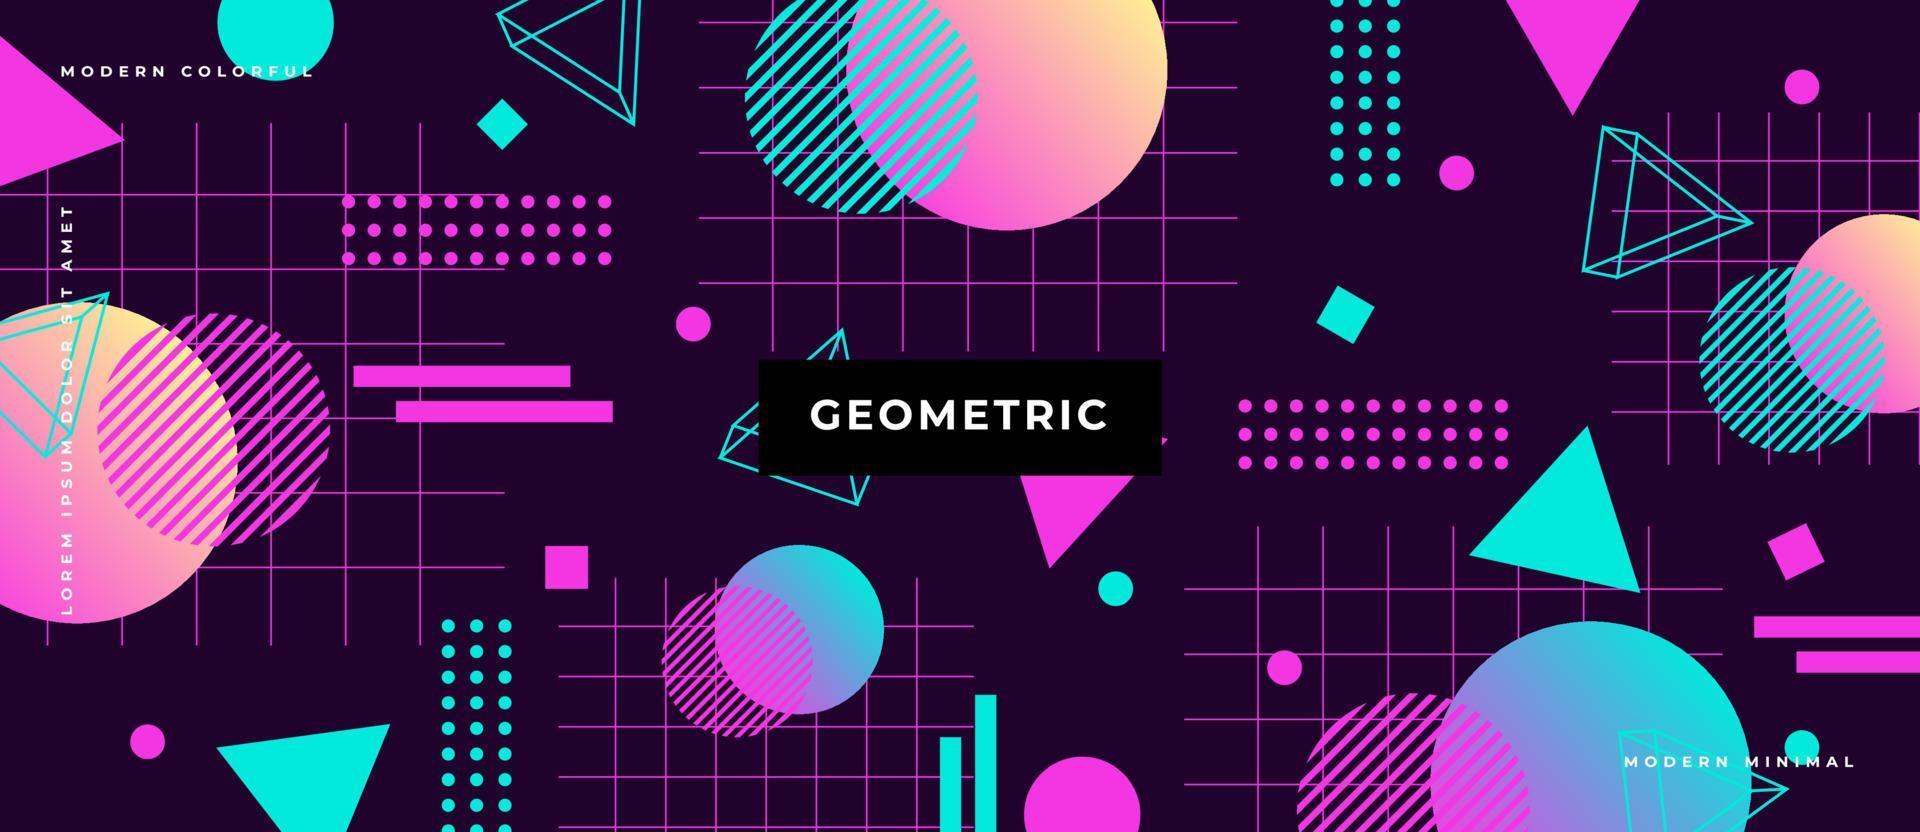 platte veelhoek vorm futuristische naadloze patroon met memphis stijl geometrische vormen, cirkel, lijn, stip driehoek op neon achtergrond. vector